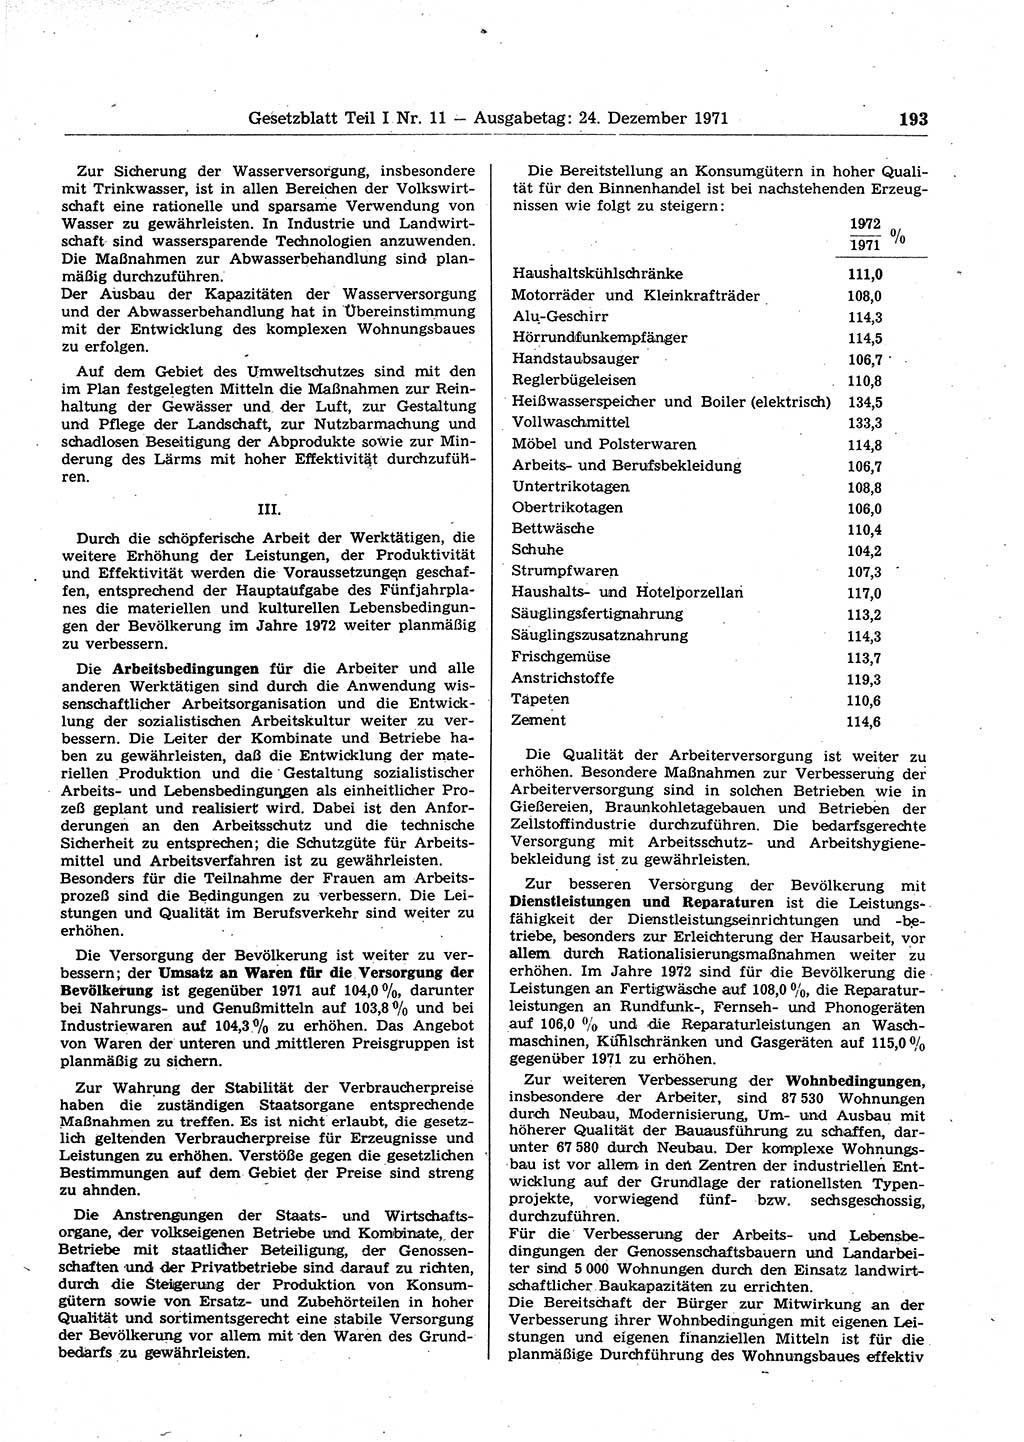 Gesetzblatt (GBl.) der Deutschen Demokratischen Republik (DDR) Teil Ⅰ 1971, Seite 193 (GBl. DDR Ⅰ 1971, S. 193)